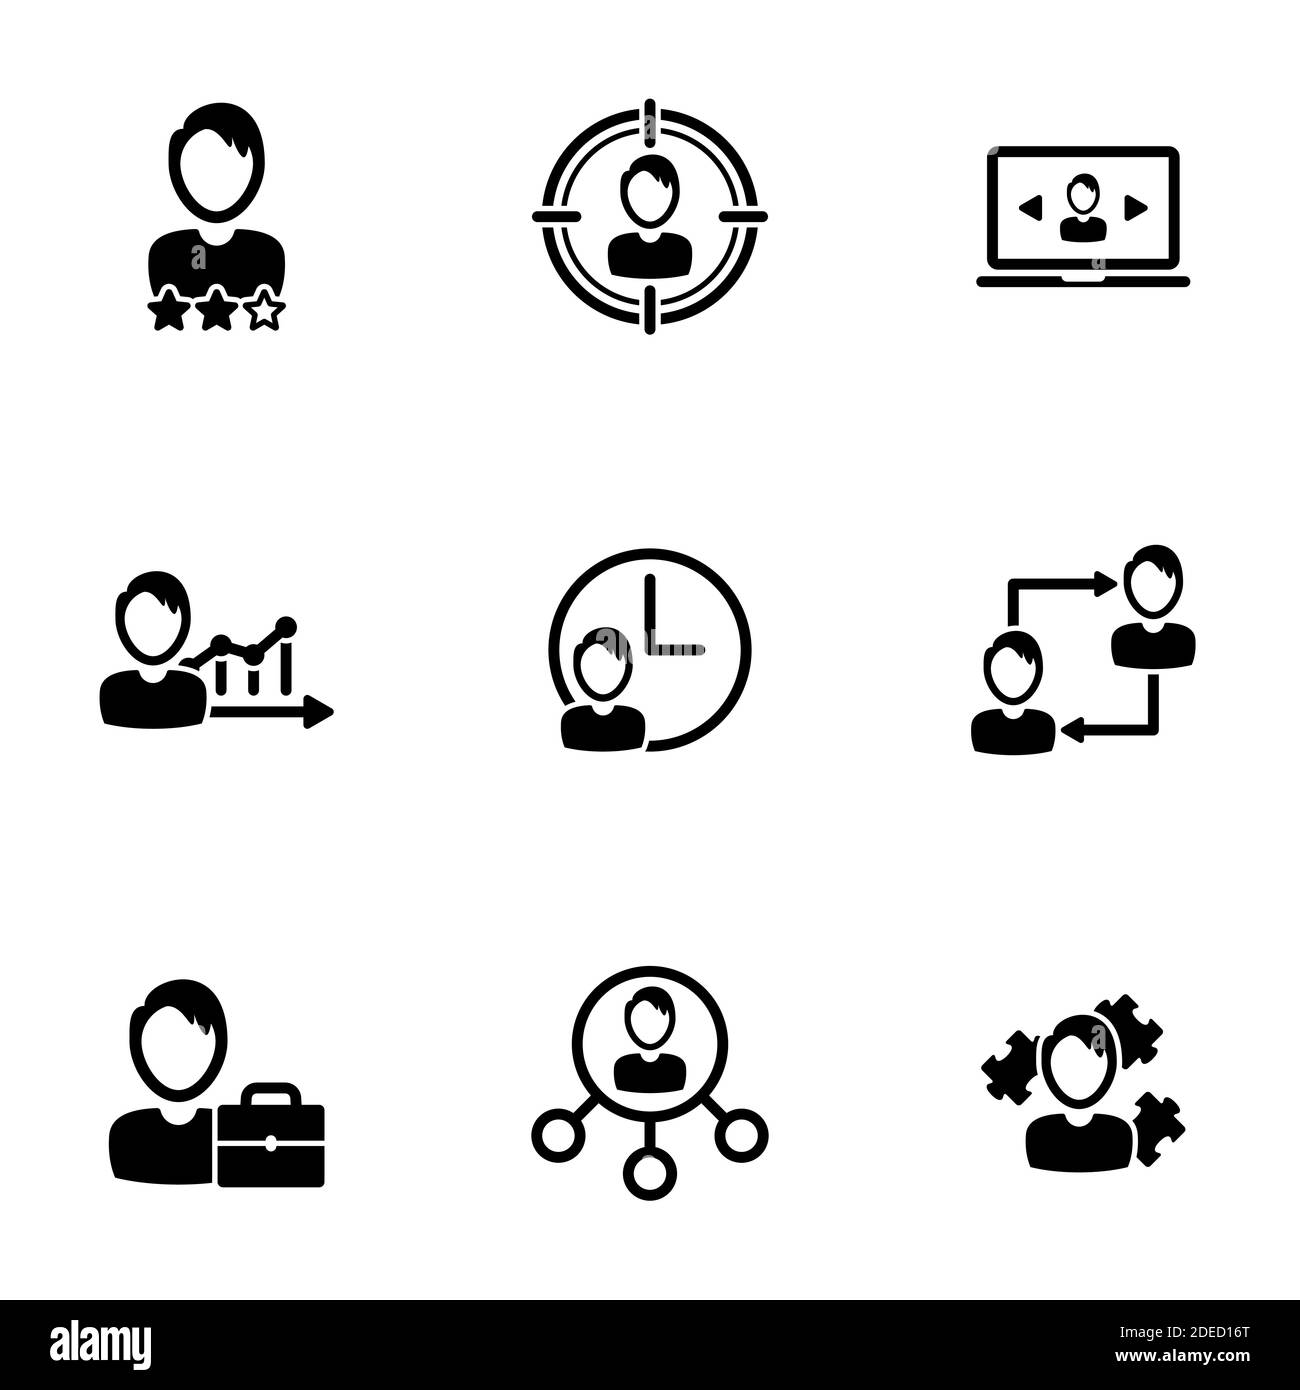 Insieme di icone semplici su un tema Outsourcing, vettore, disegno, collezione, piatto, segno, simbolo, elemento, oggetto, illustrazione, isolato. Sfondo bianco Illustrazione Vettoriale